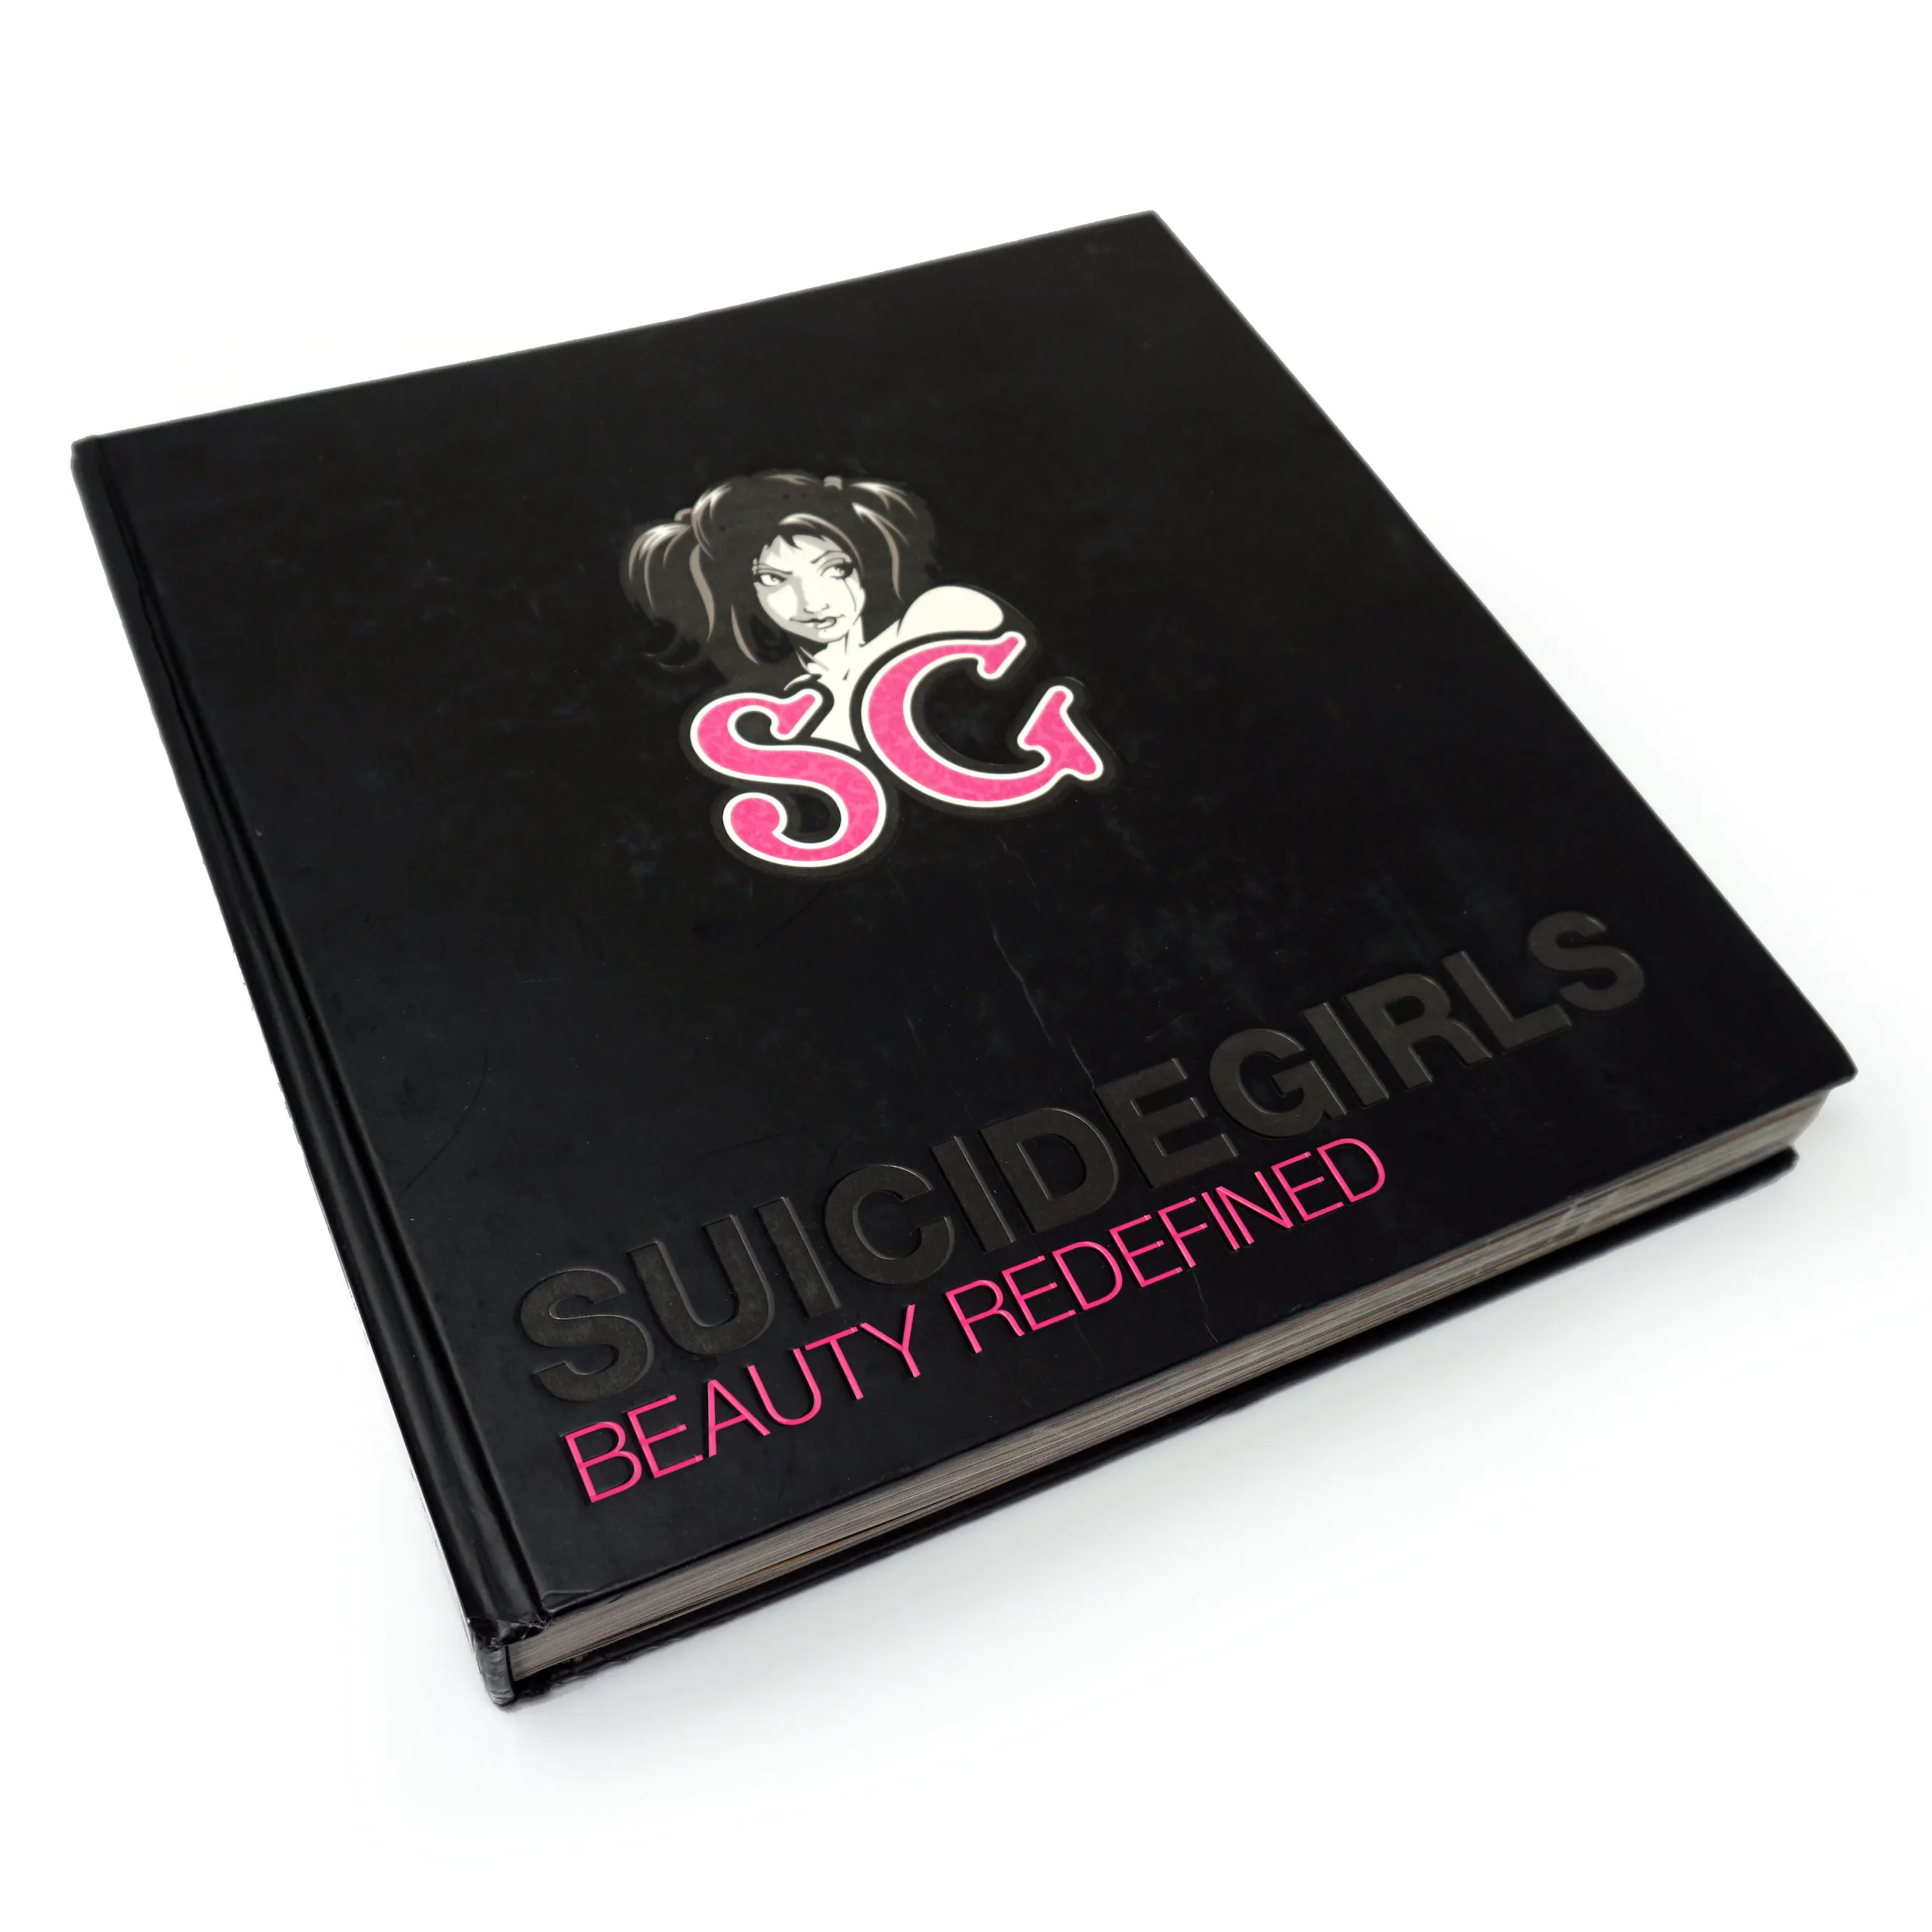 SuicideGirls – Beauty Redefined (2008)